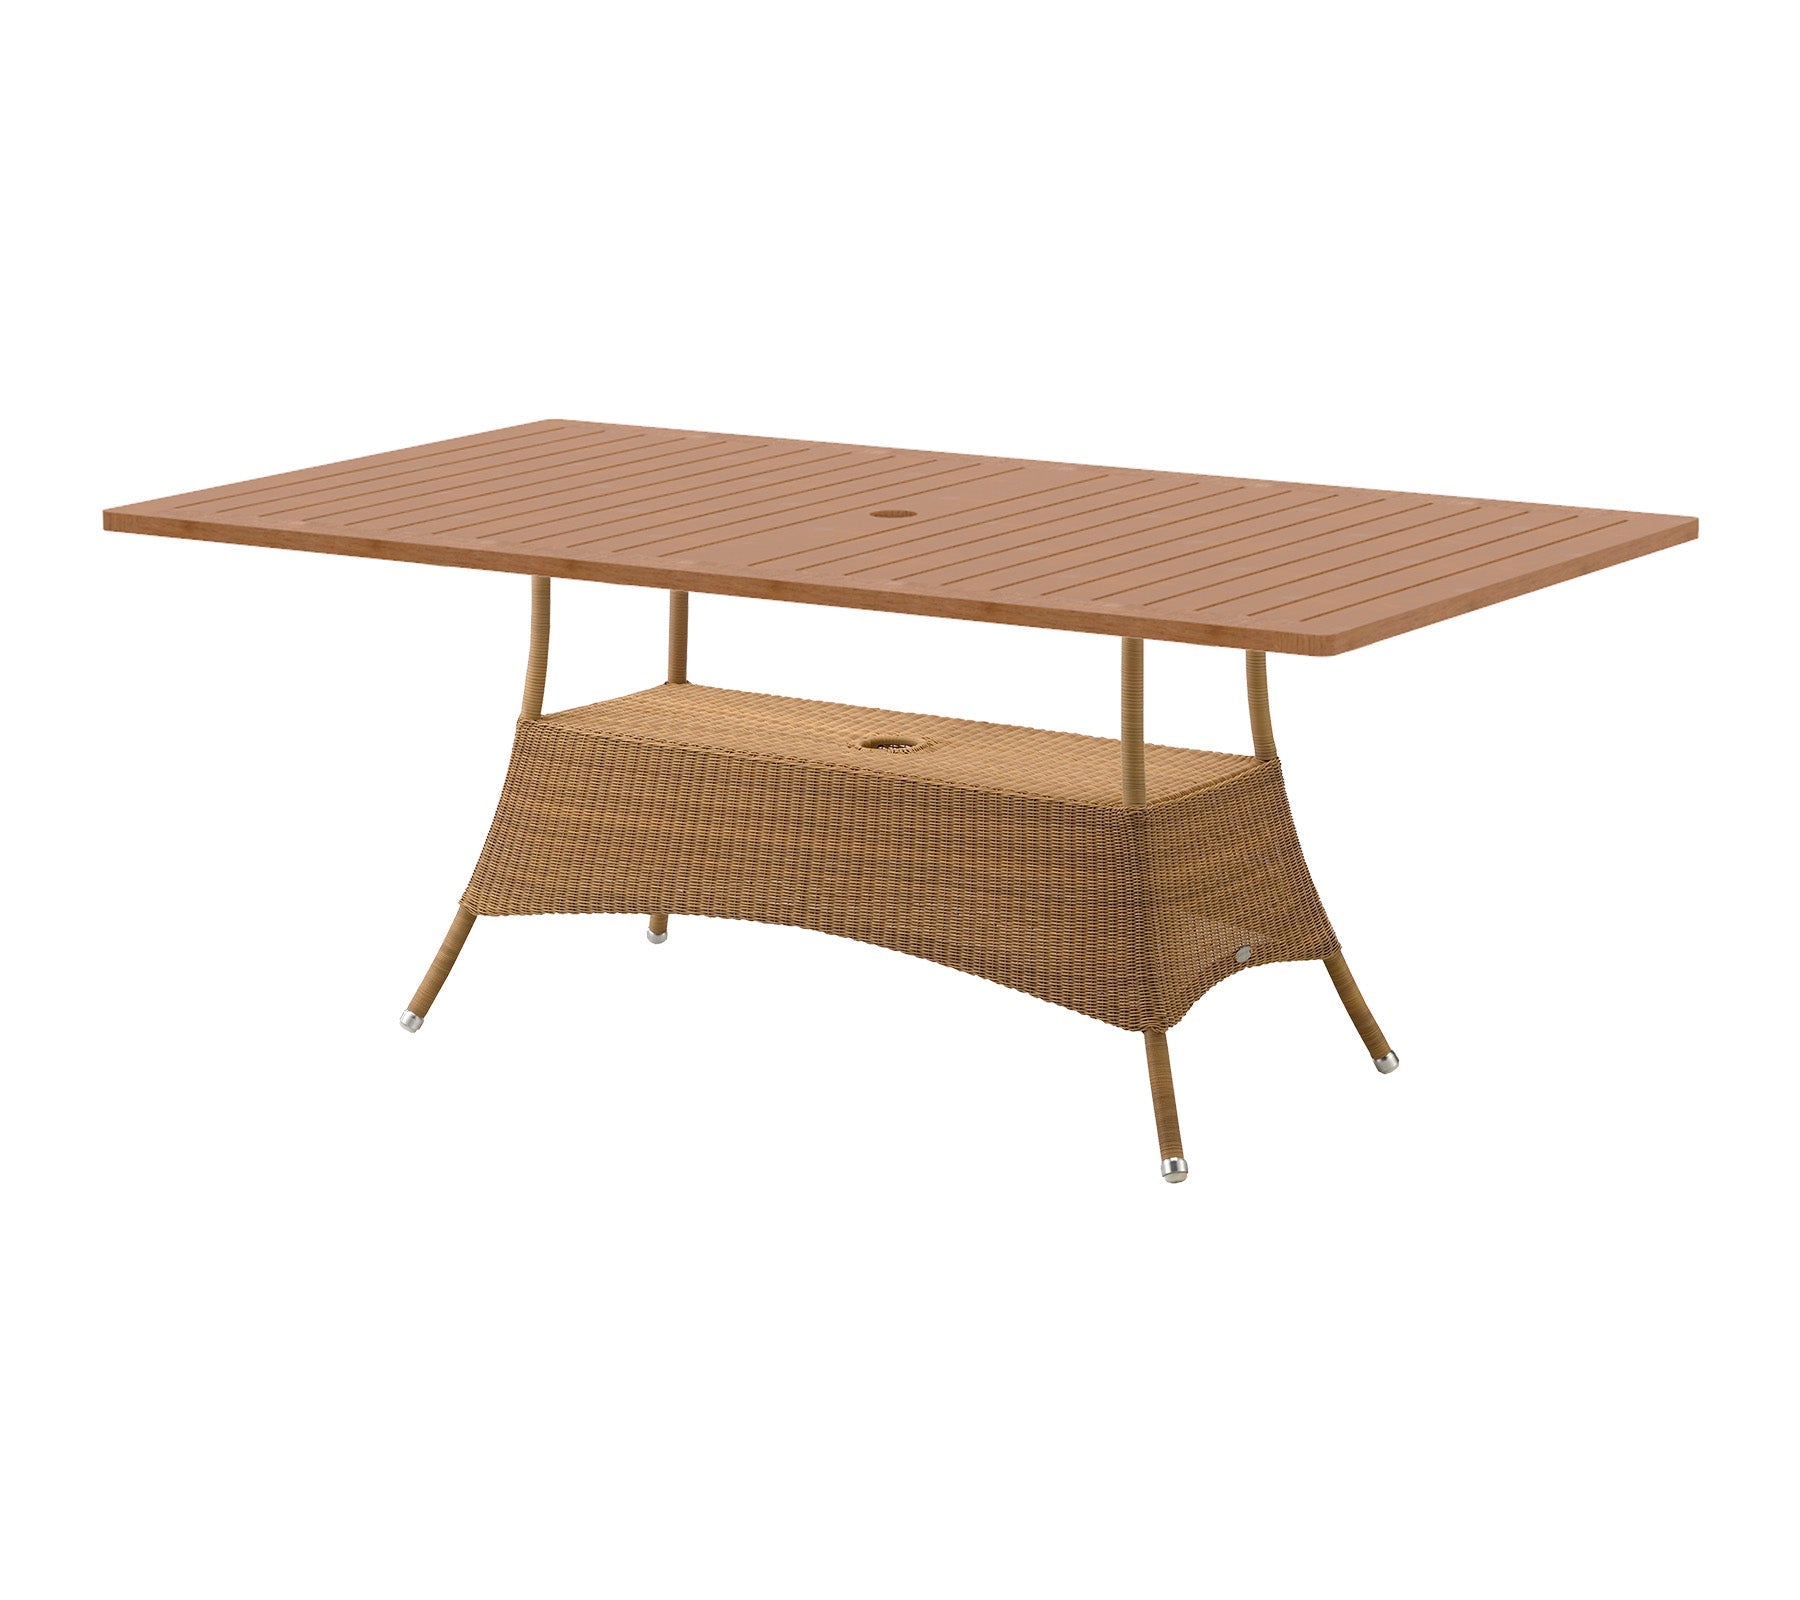 Lansing dining table, large, 180x100 cm | 5056